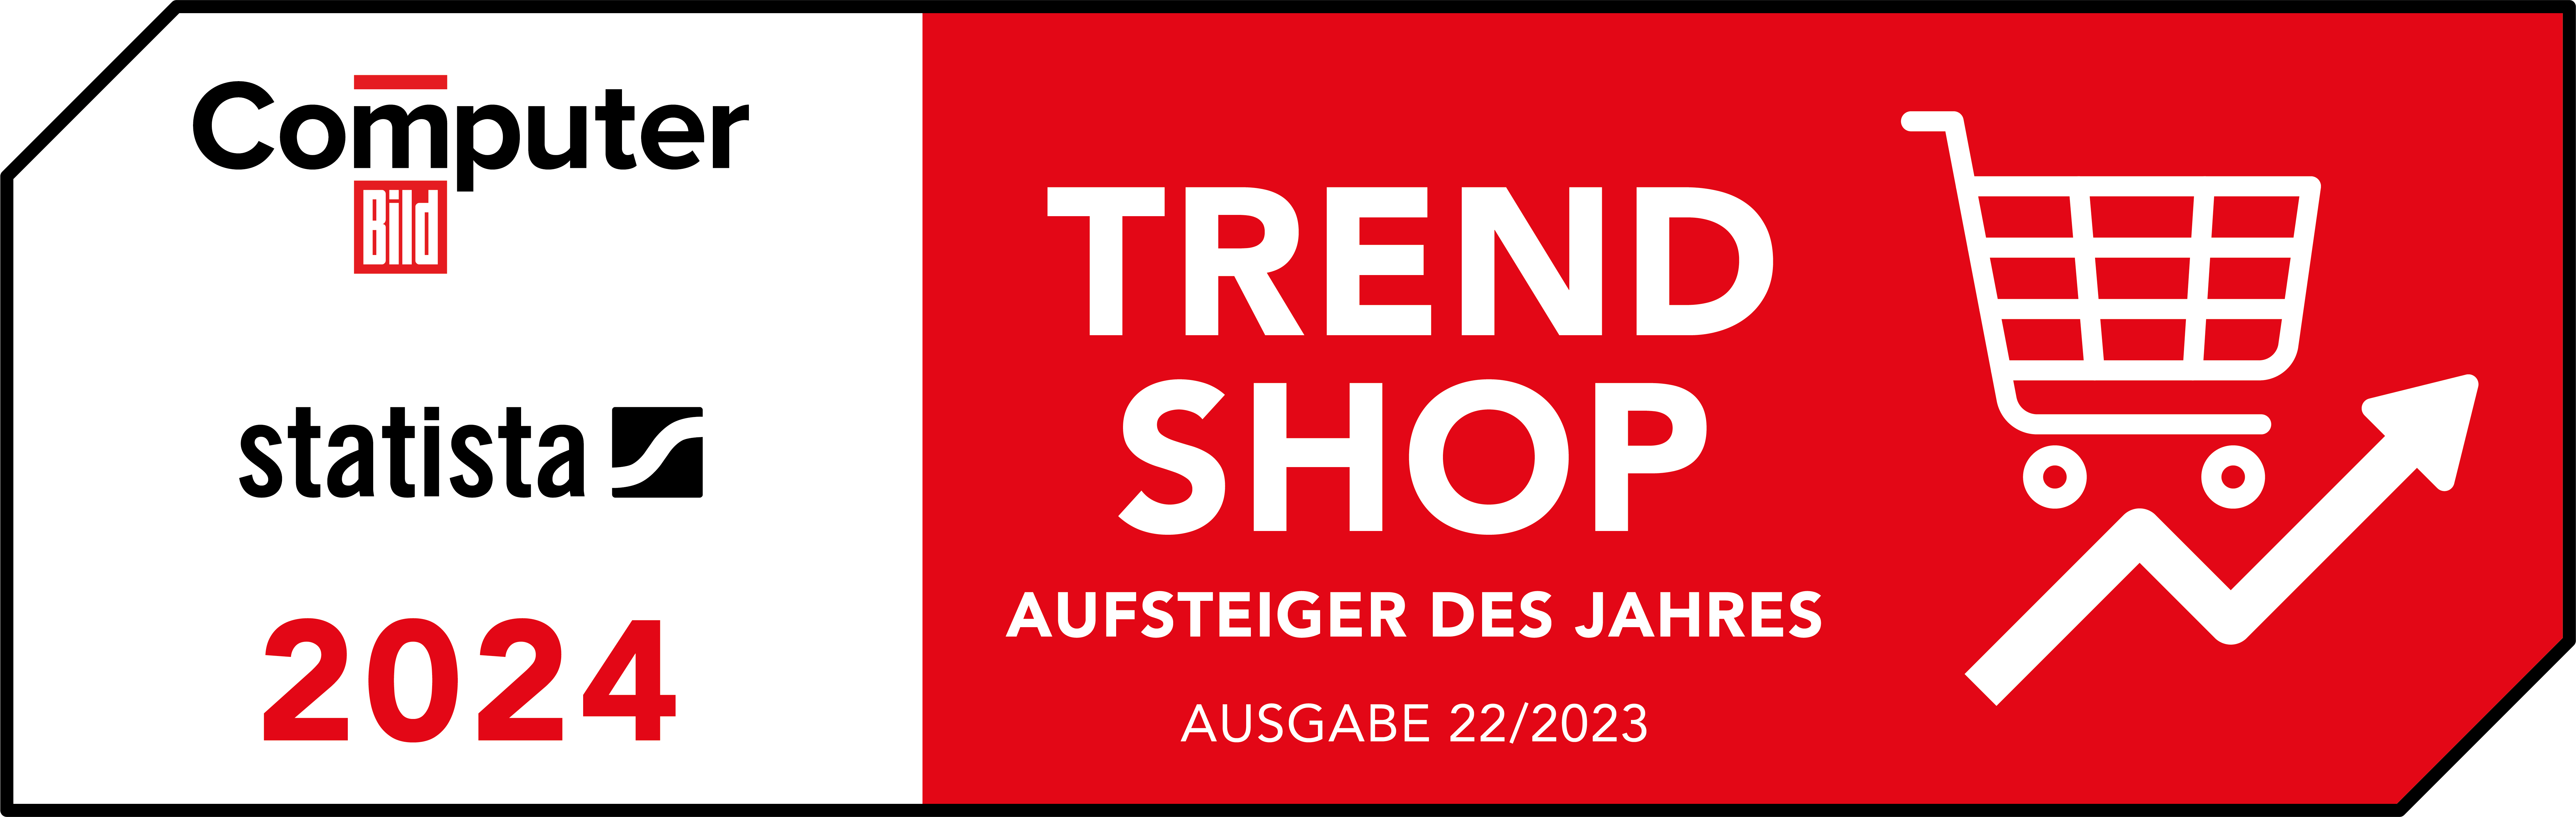 Trend Shop 